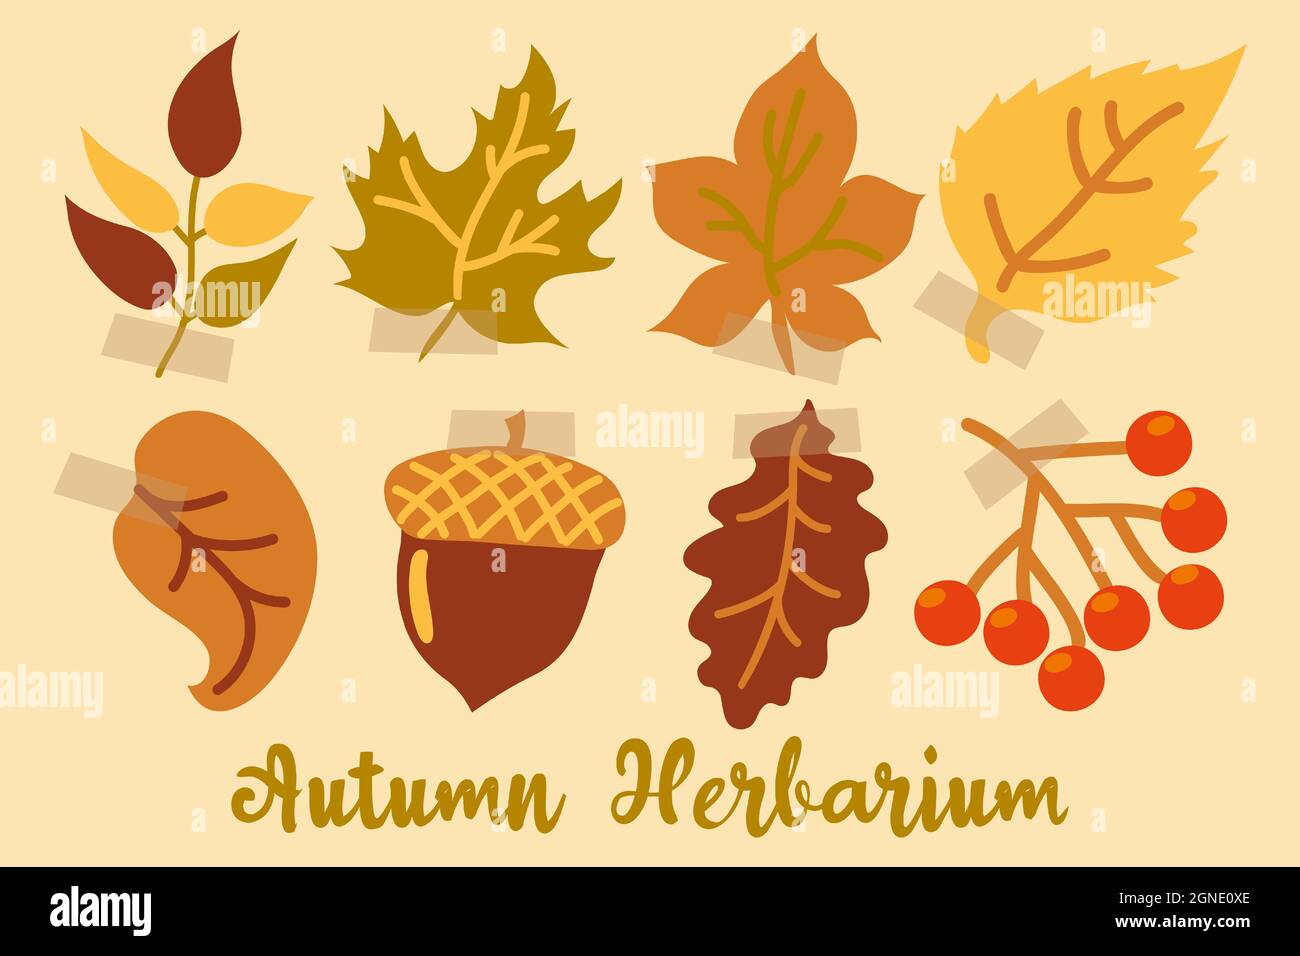 Erbario autunnale decorativo con foglie, un ramo di bacche e un acorno. Foglie d'autunno. Foglie di quercia, acero, frassino, betulla, rowan e tiglio Illustrazione Vettoriale